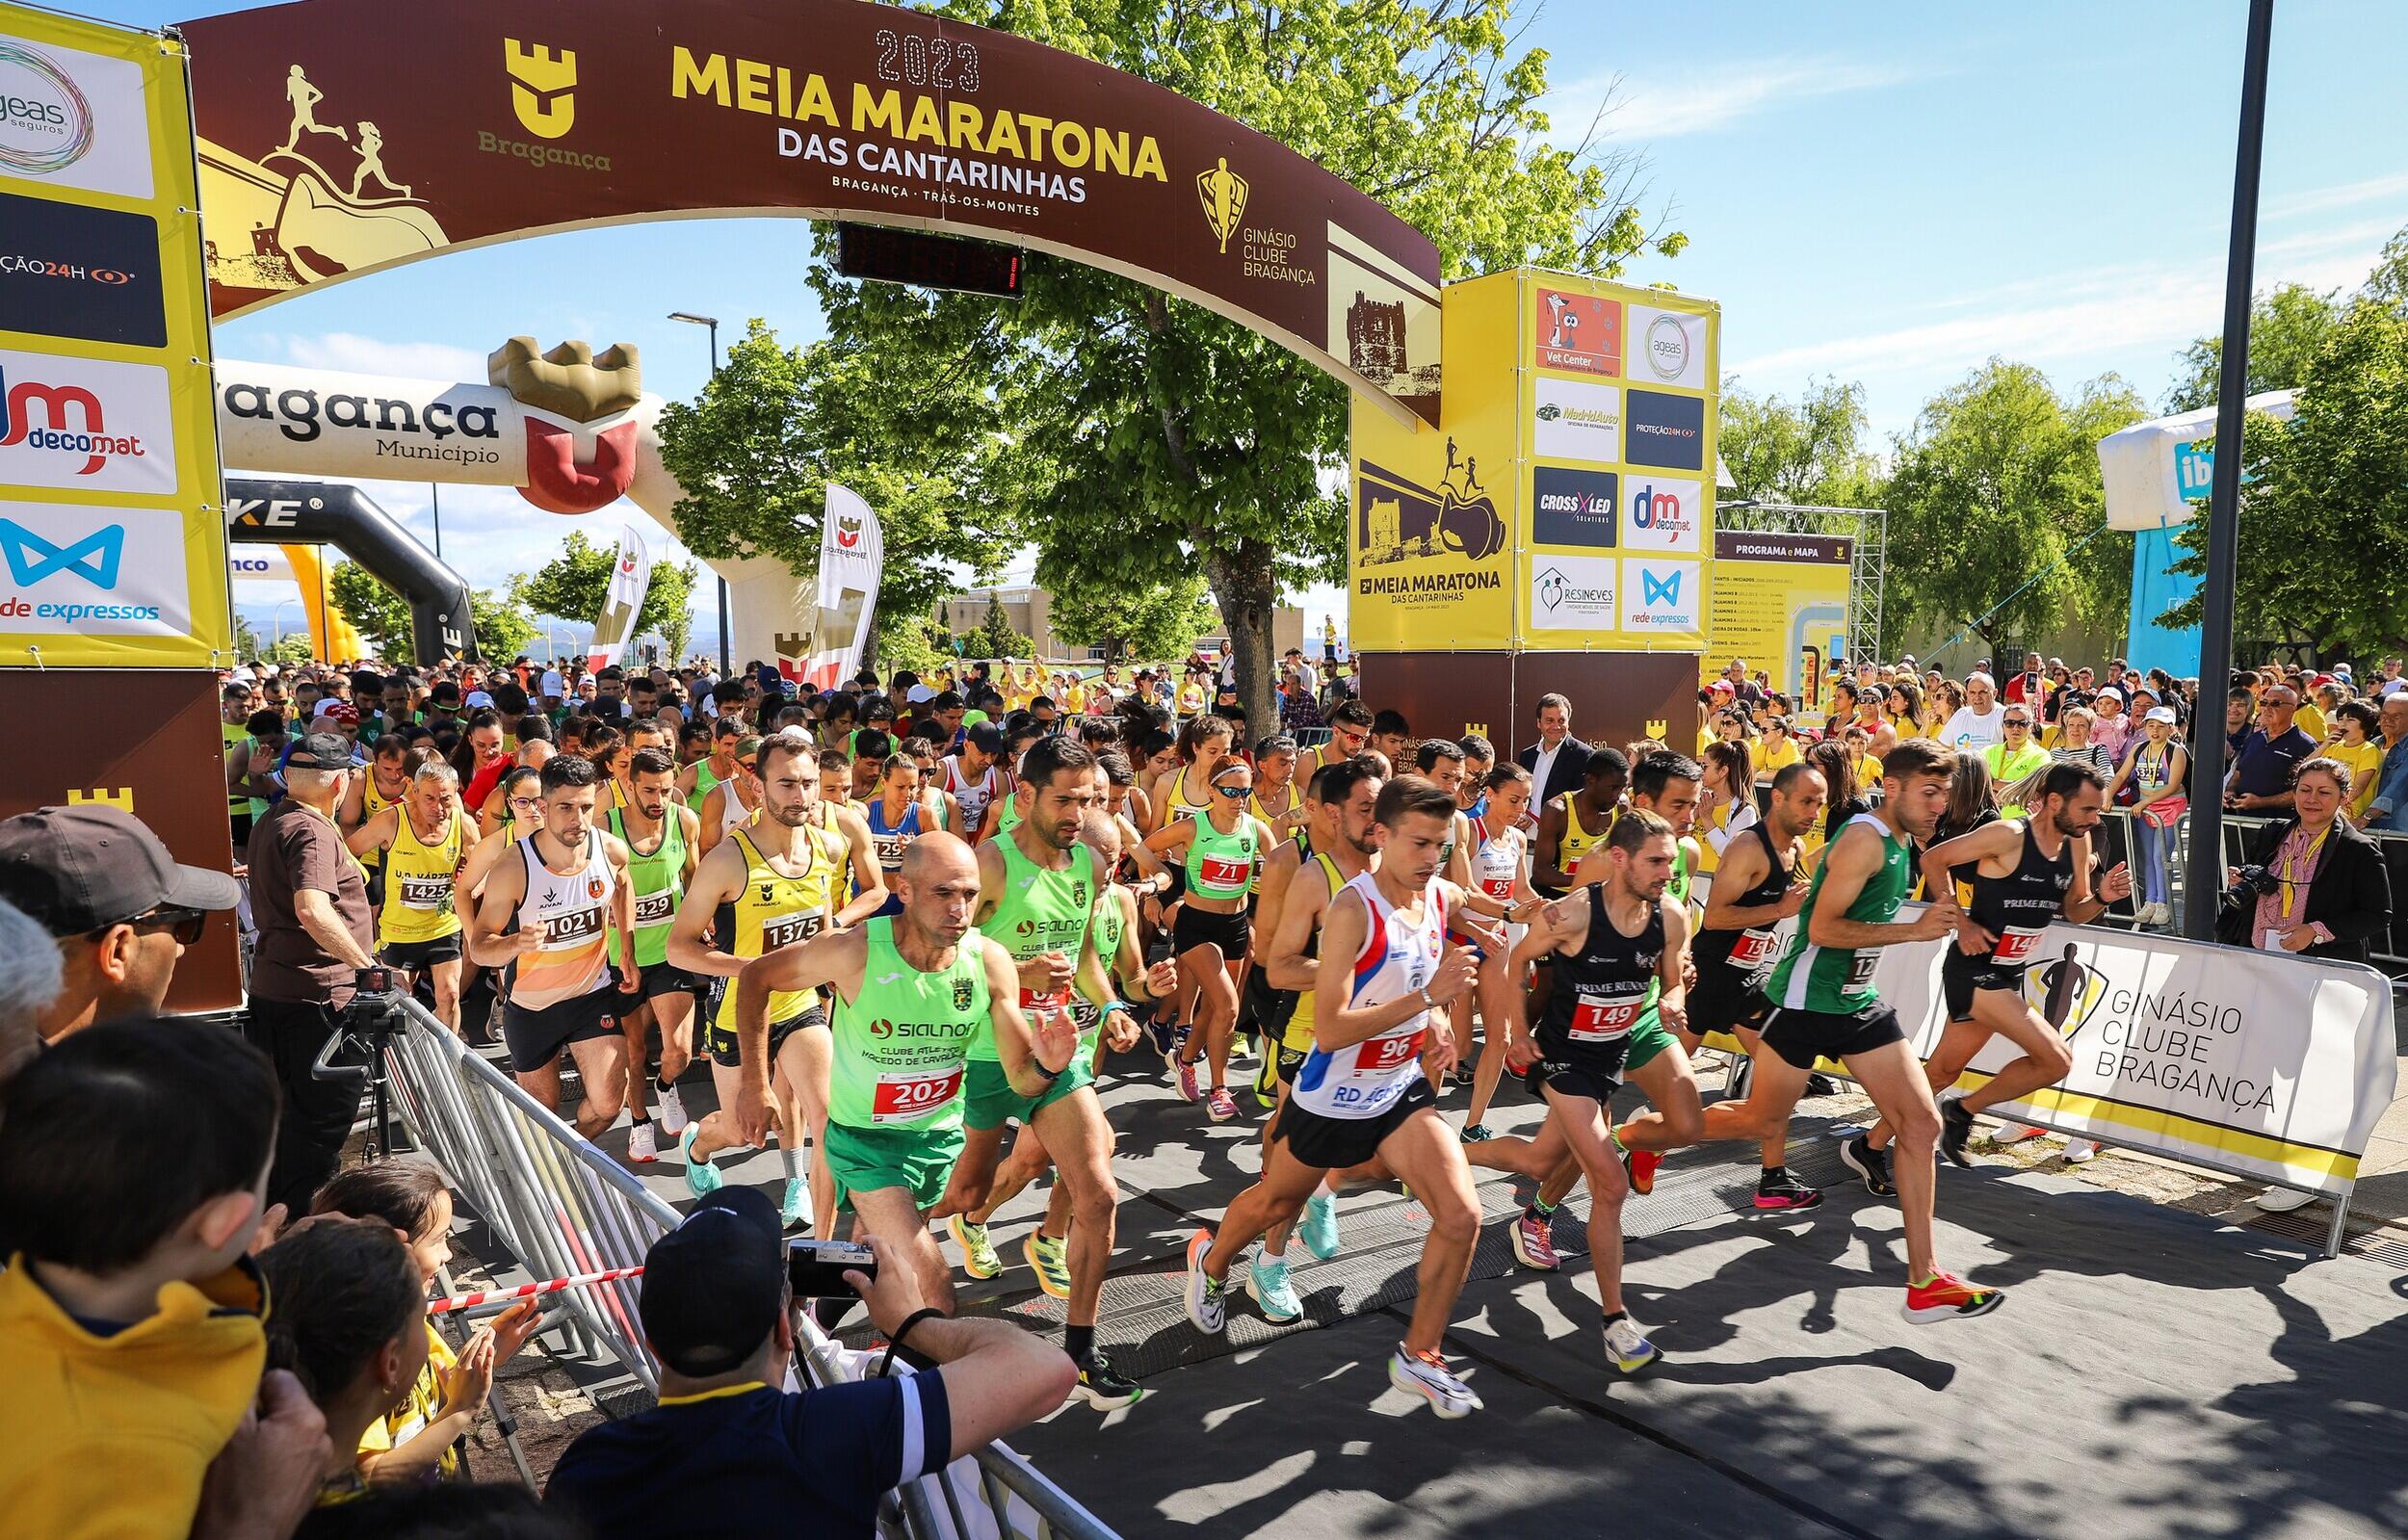 Meia Maratona das Cantarinhas a correr atrás da tradição